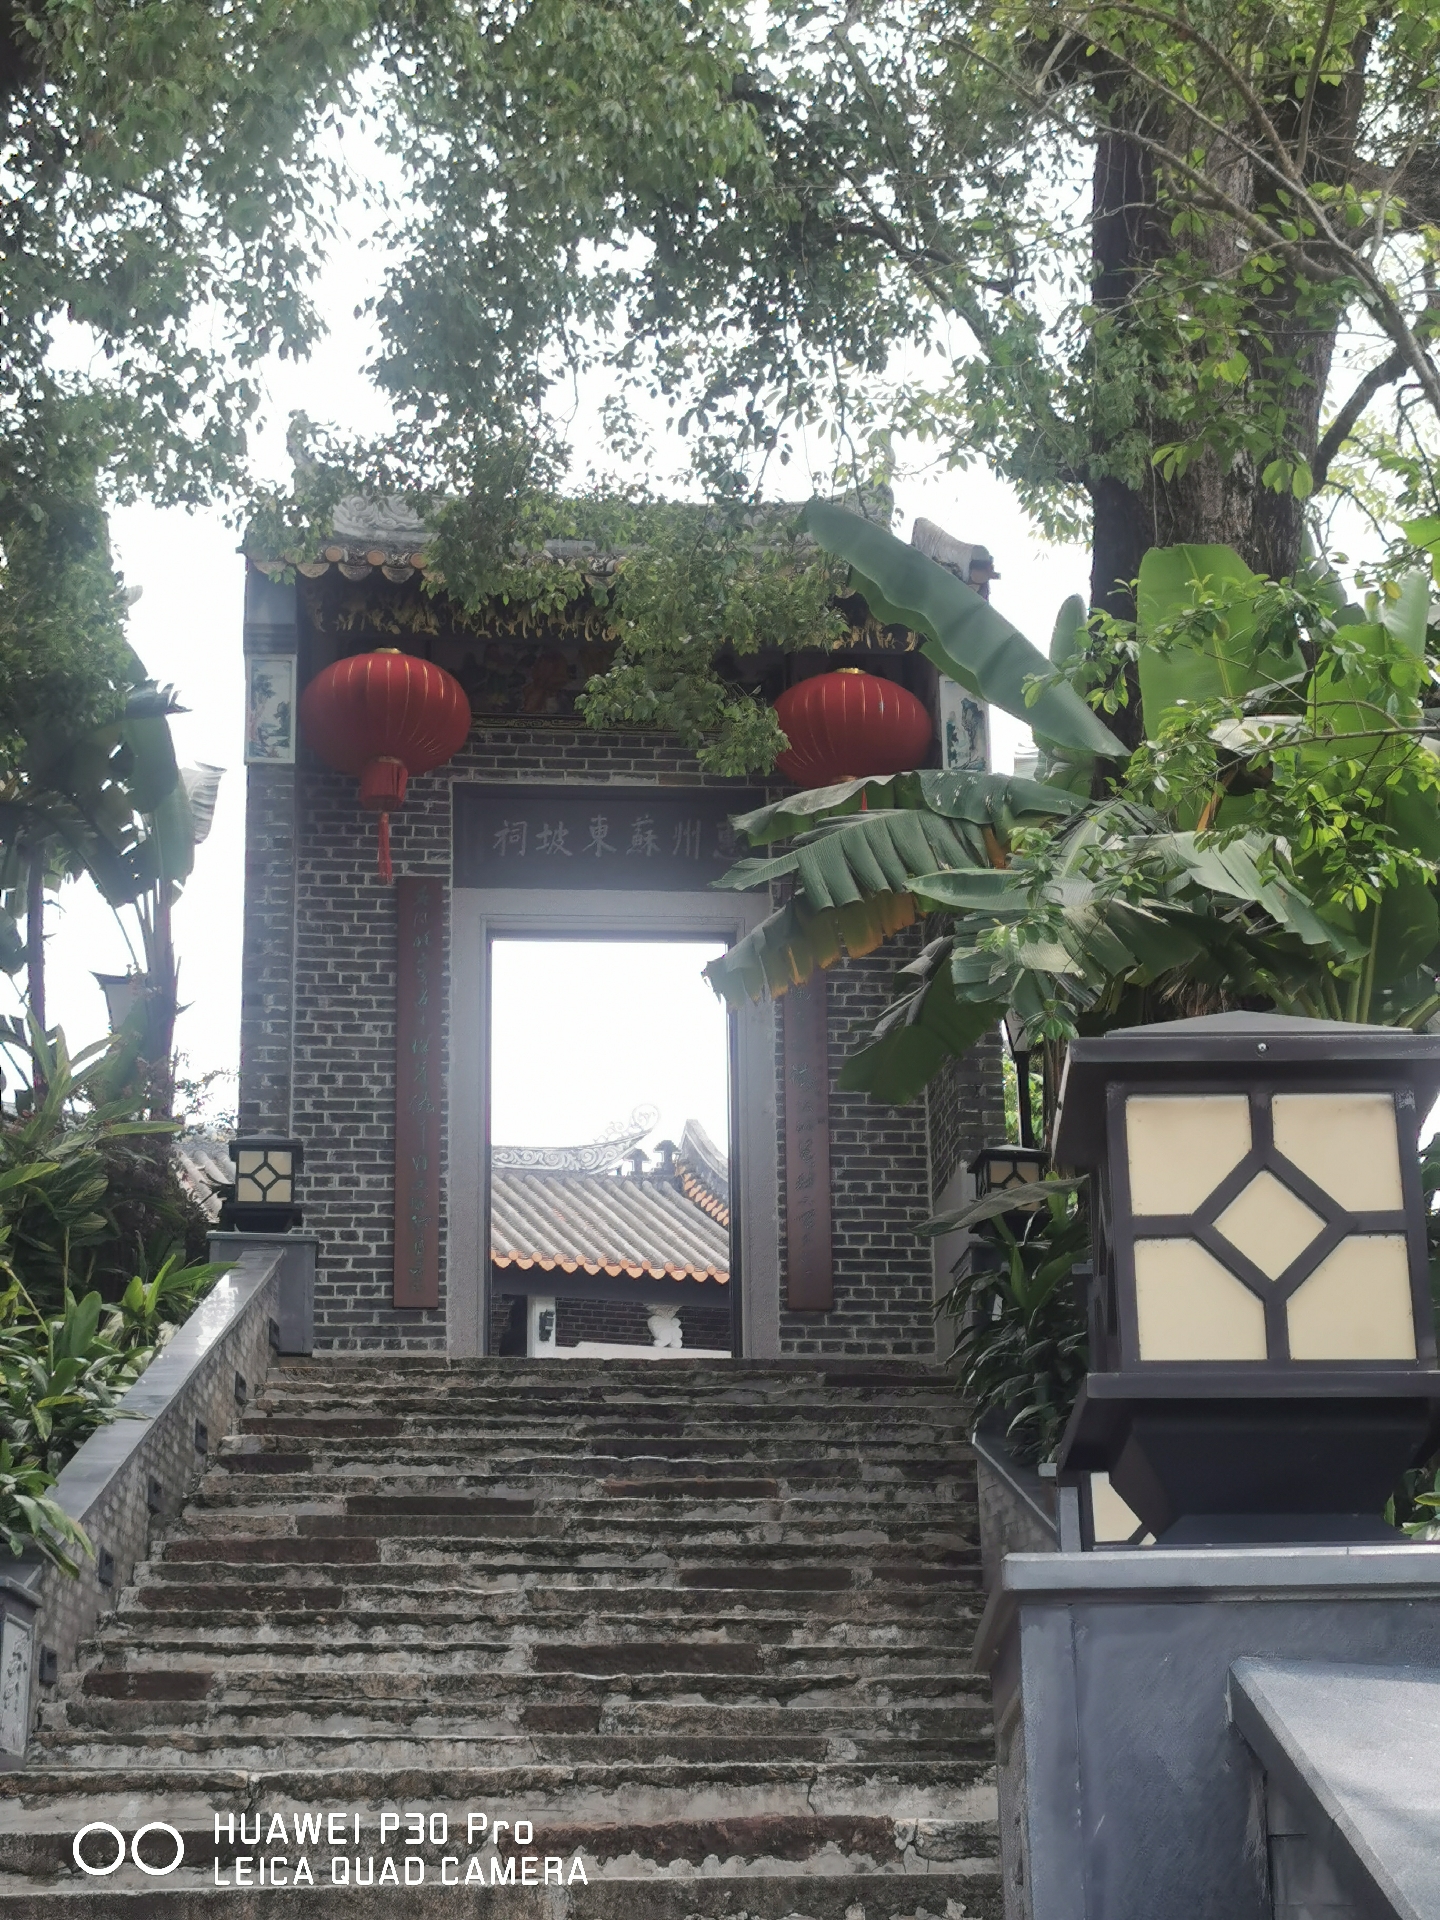 没想到当地对与其有关的文化遗址保护,修复得如此之好,仅苏东坡纪念馆